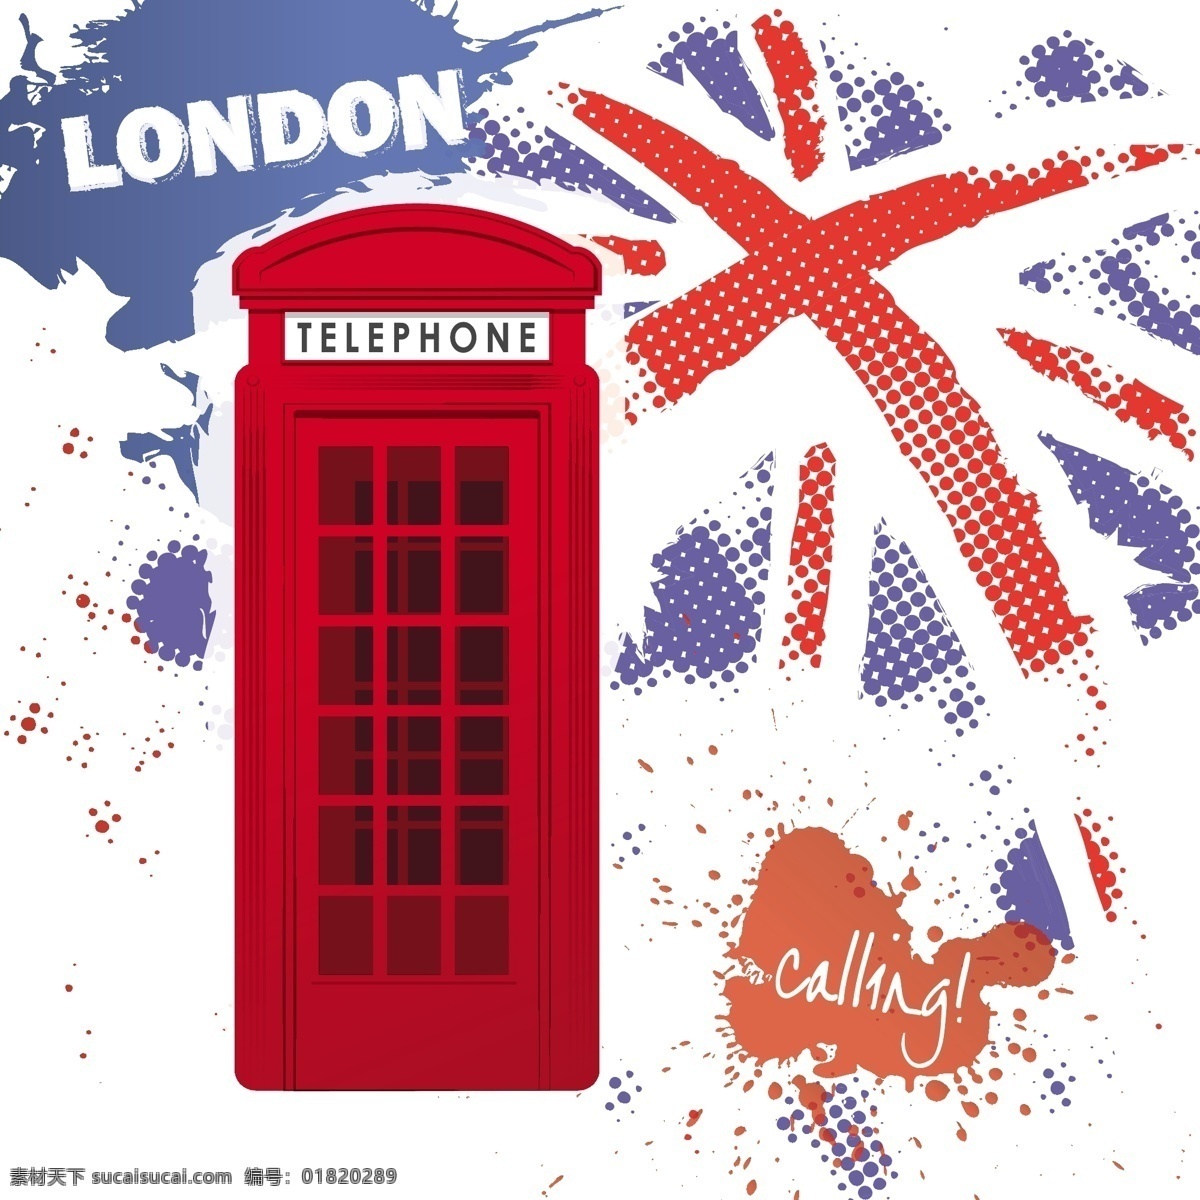 伦敦 街头 复古 电话亭 矢量 材料 电话 涂鸦 油墨 园林建筑 十字旗 街道电话亭 在英国 街上 摊位 矢量图 花纹花边